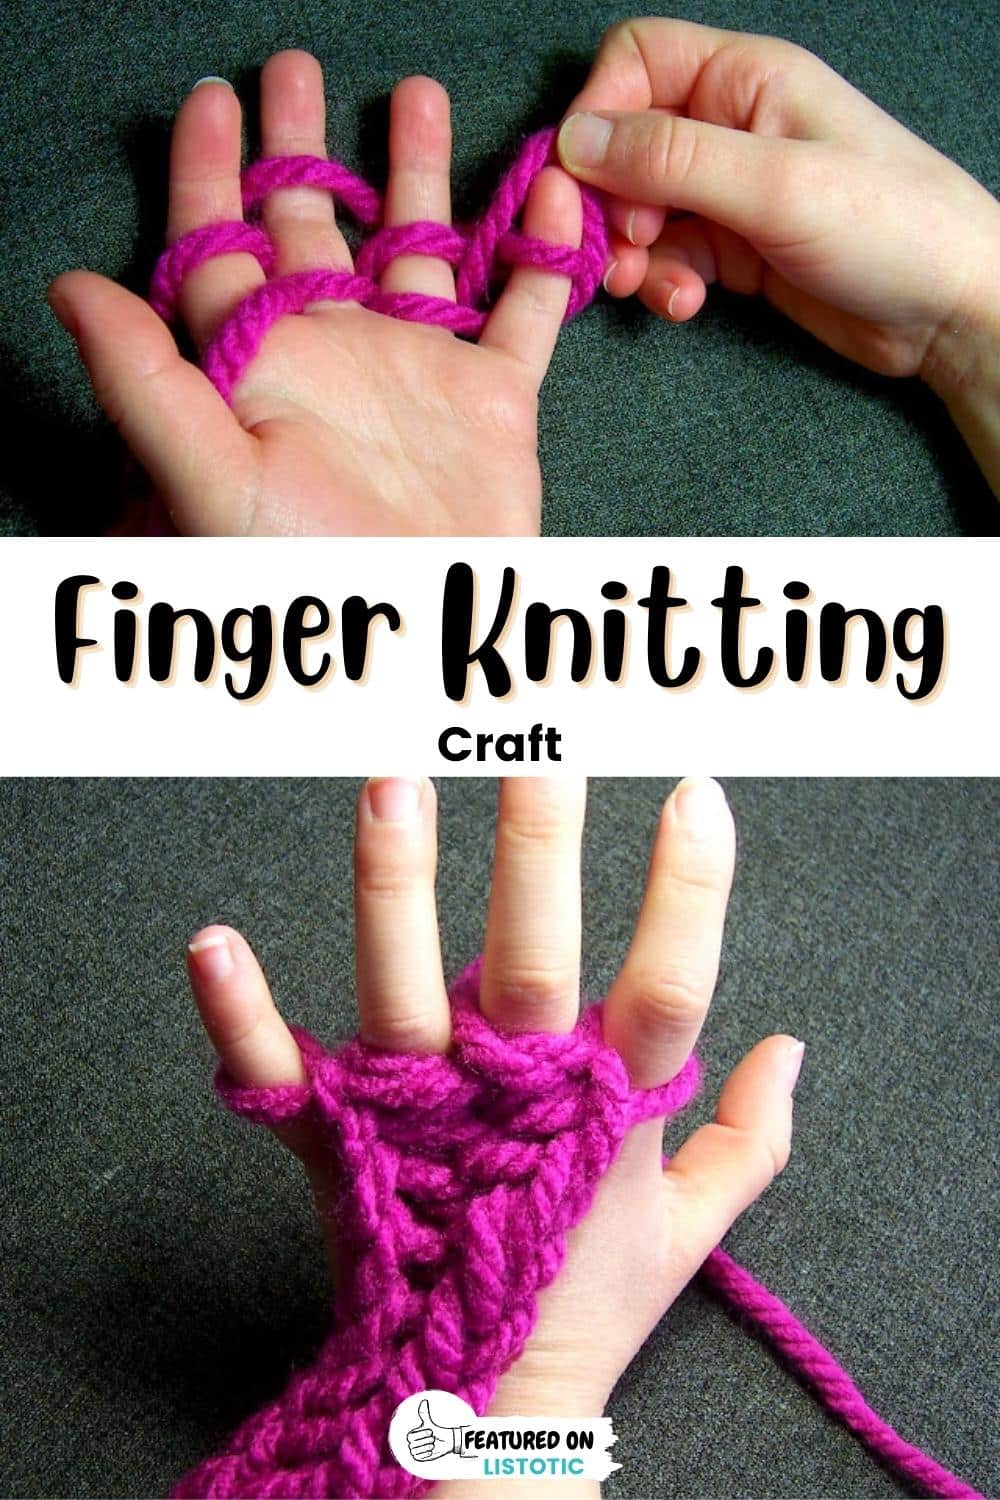 Finger knitting.